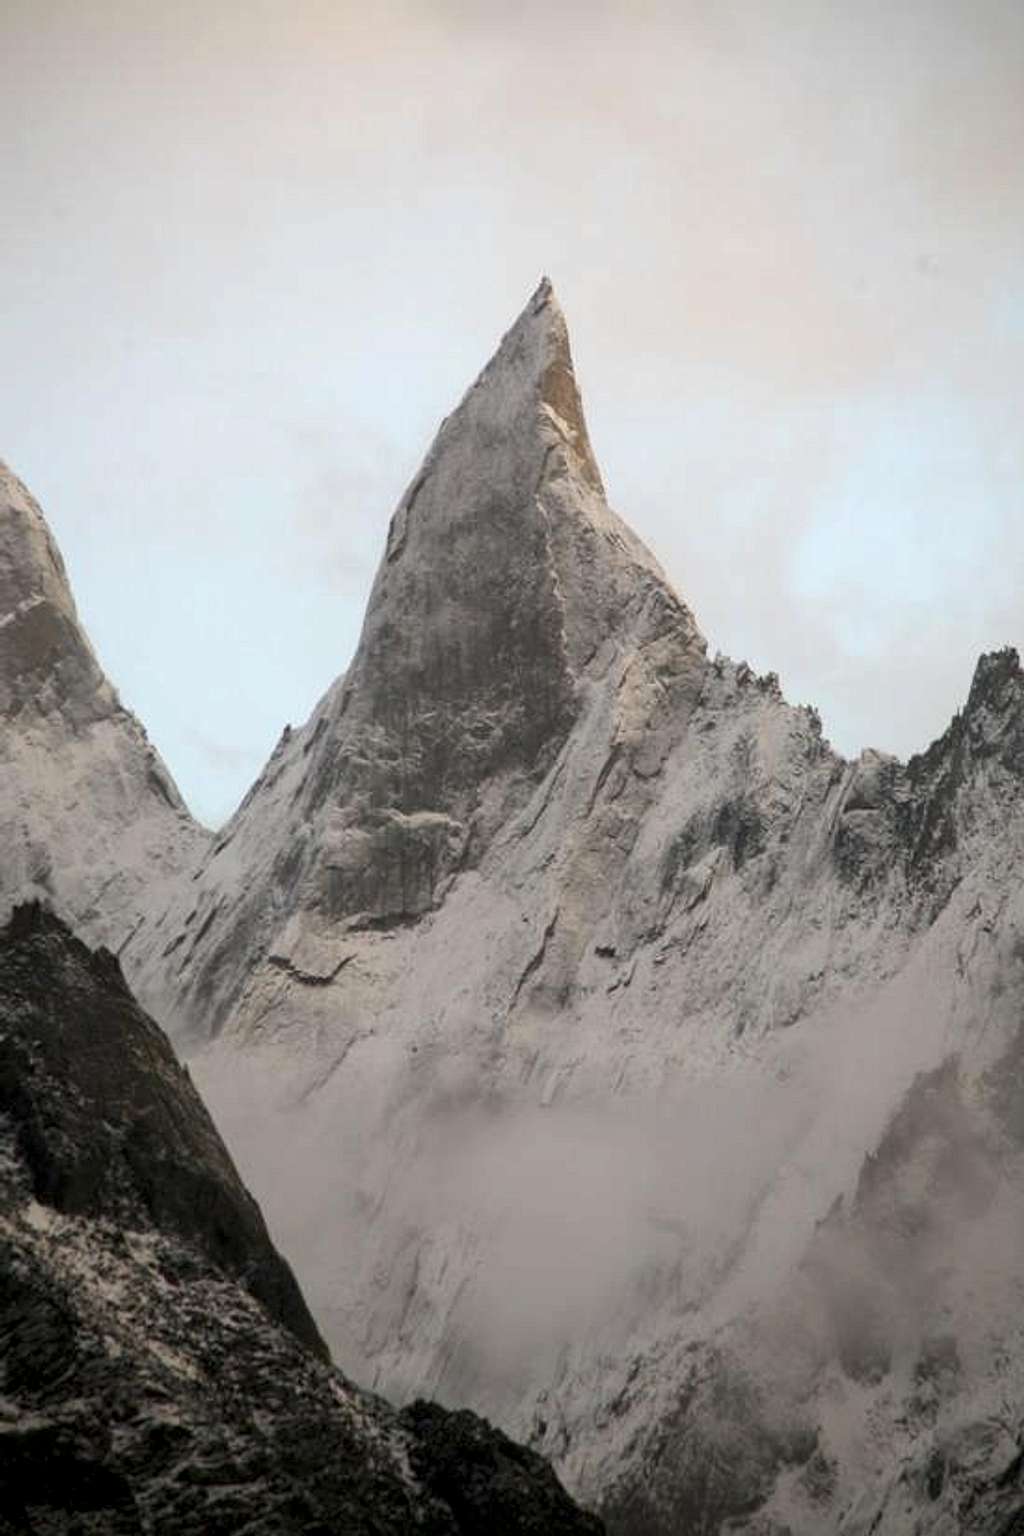 Un-named 5000m Peak, Baltoro Glacier, Karakoram, Pakistan